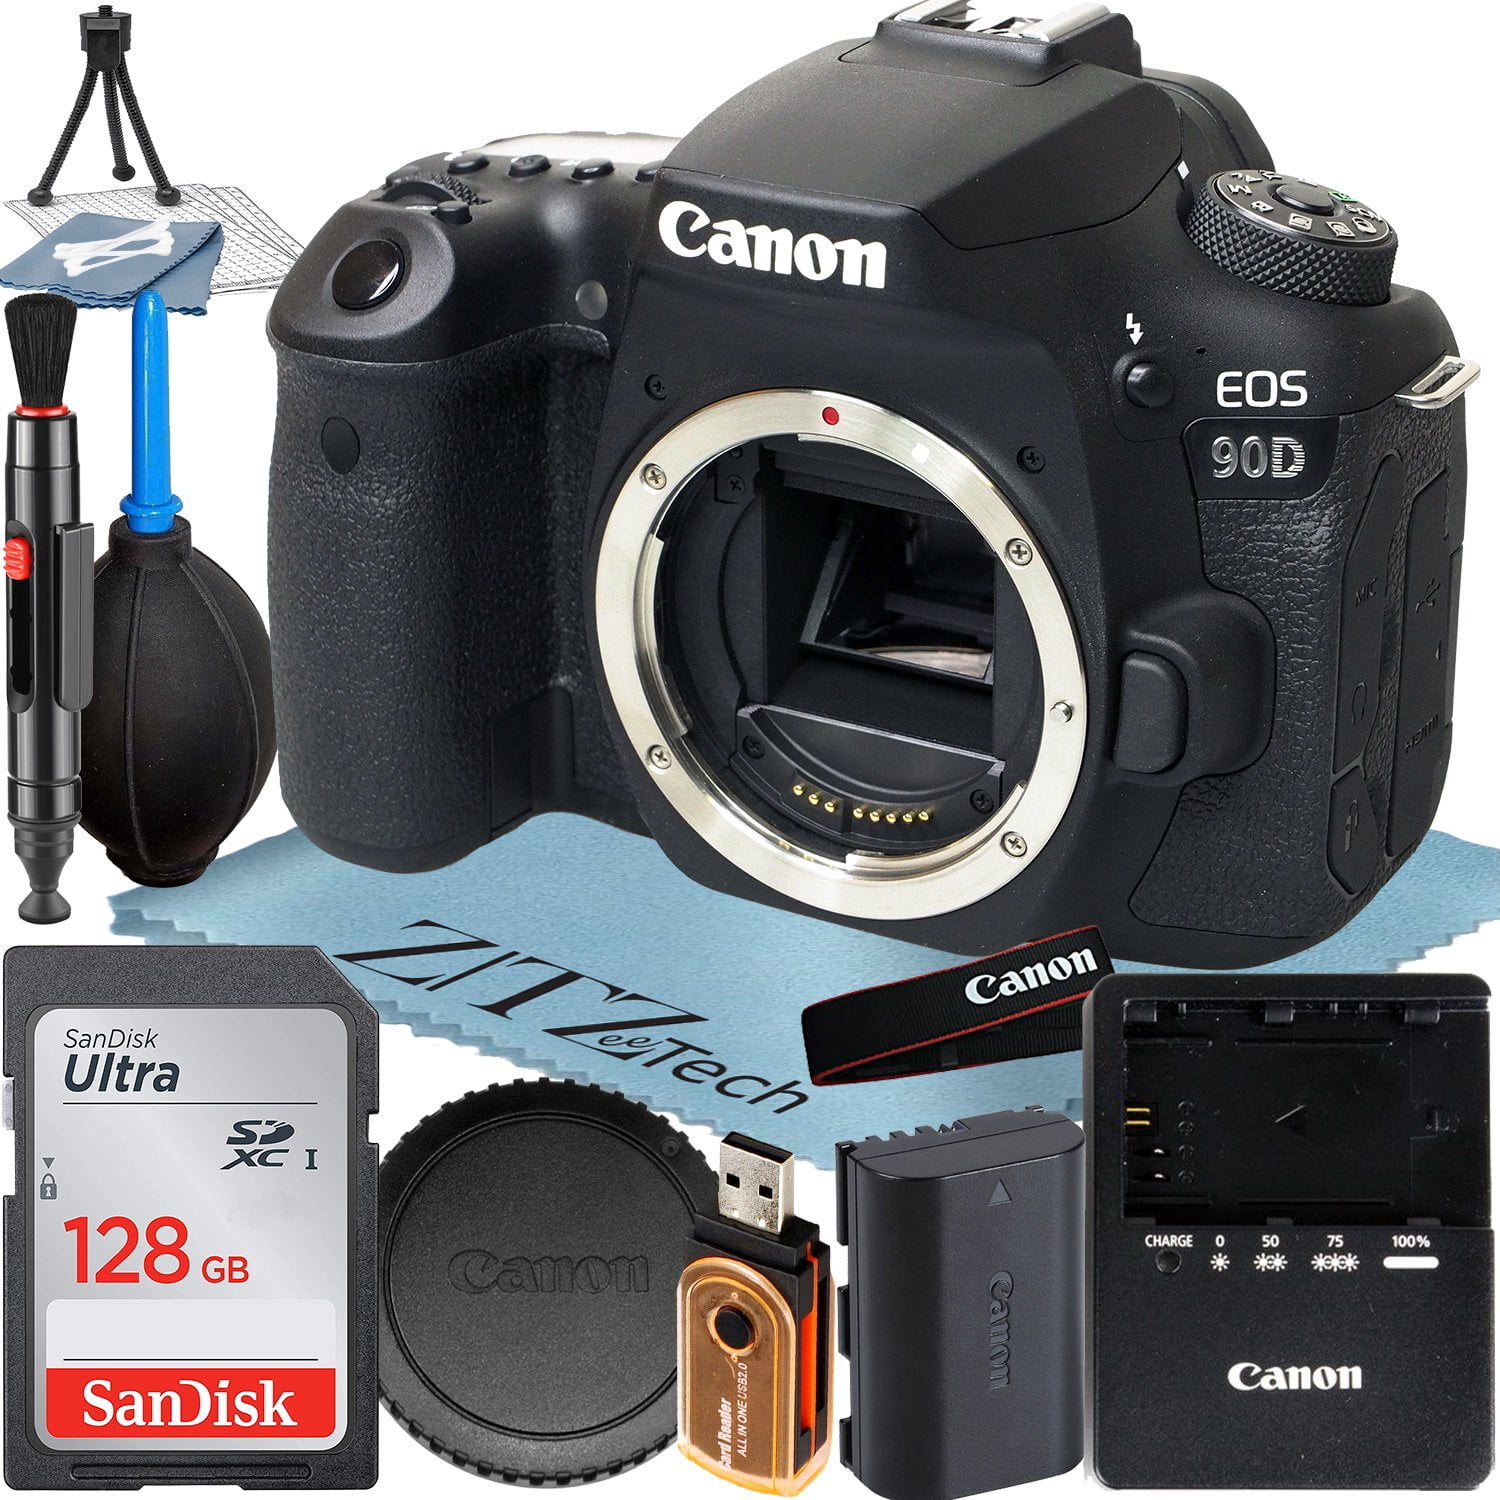 Canon EOS 90D DSLR Camera (Body Only) with 32.5MP CMOS Sensor +